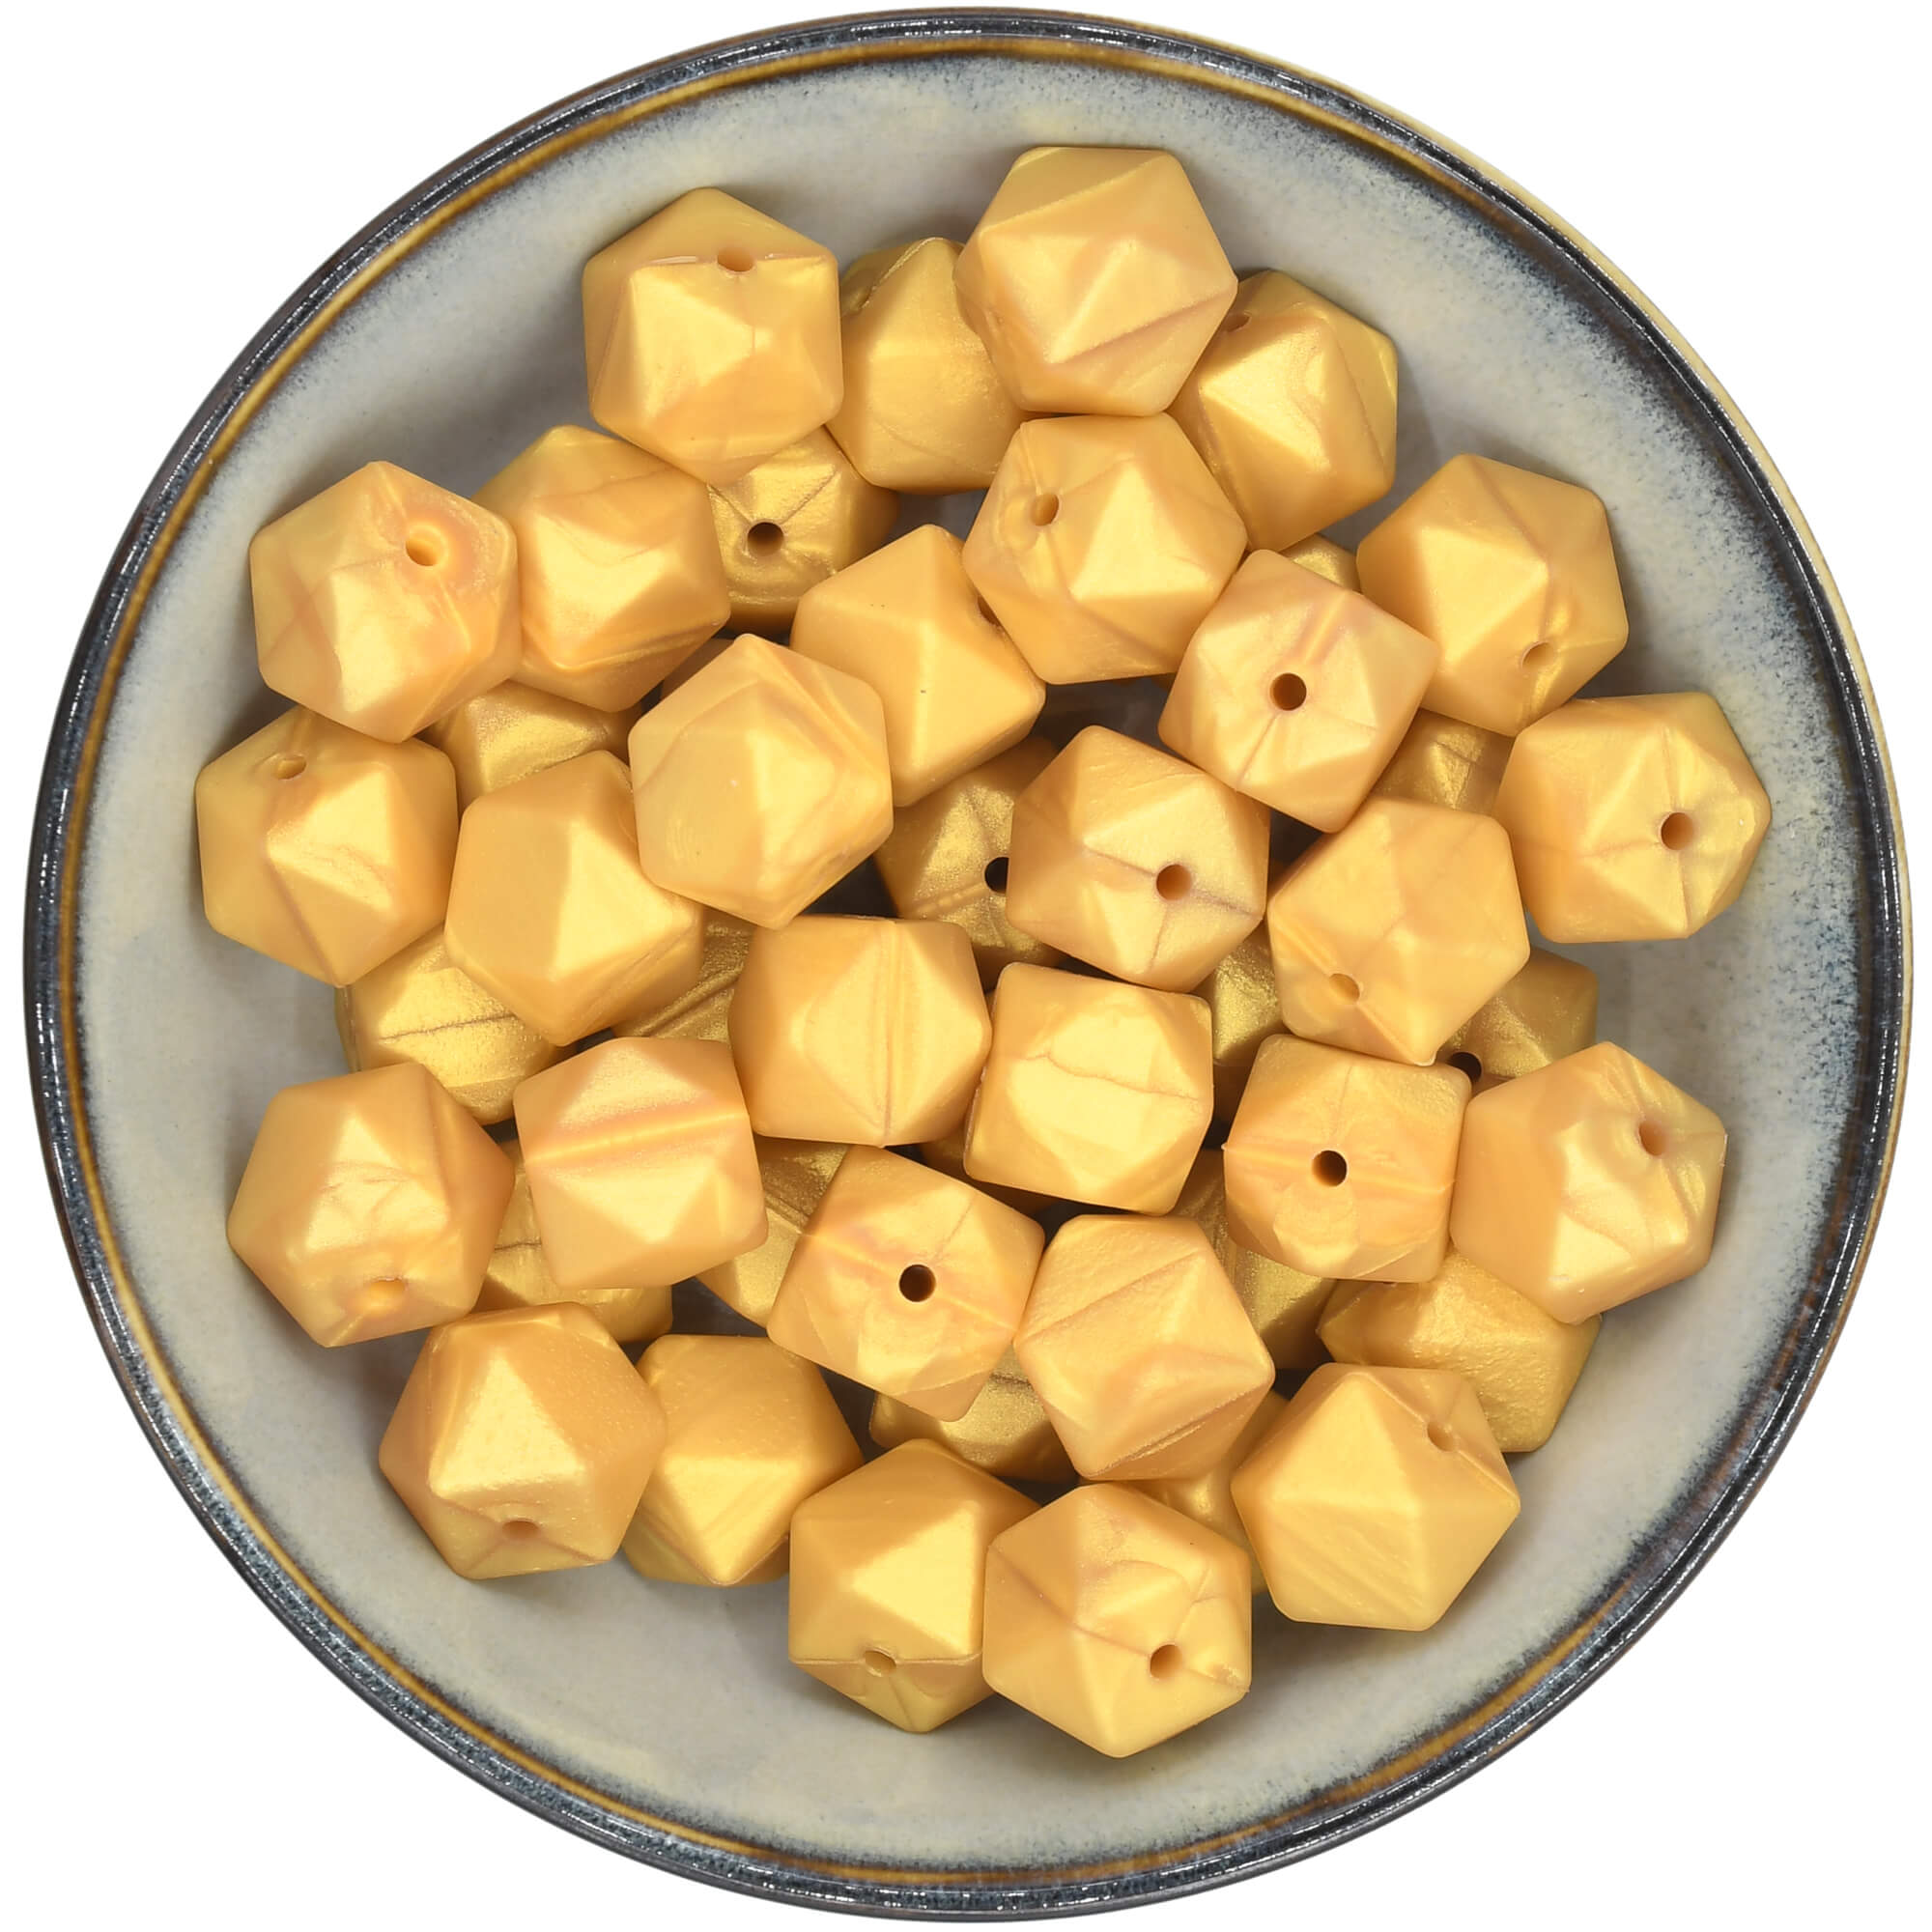 Siliconen hexagons van 17 mm in de kleur Goud met een parelmoer glans